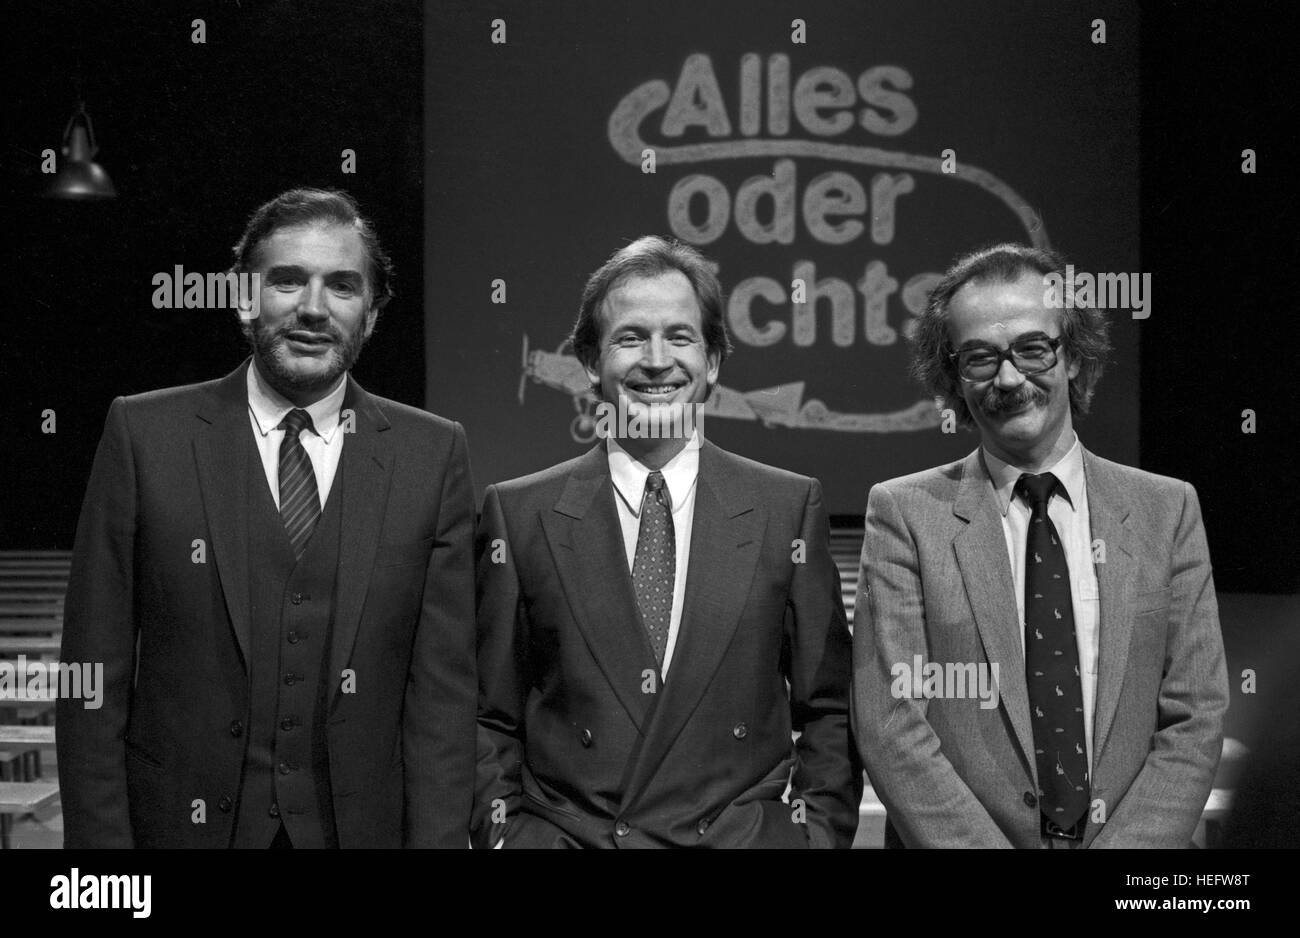 Alles oder Nichts, Spiel und Show mit Max Schautzer, Deutschland 1983, Moderator Max Schautzer mit Kandidaten Stock Photo